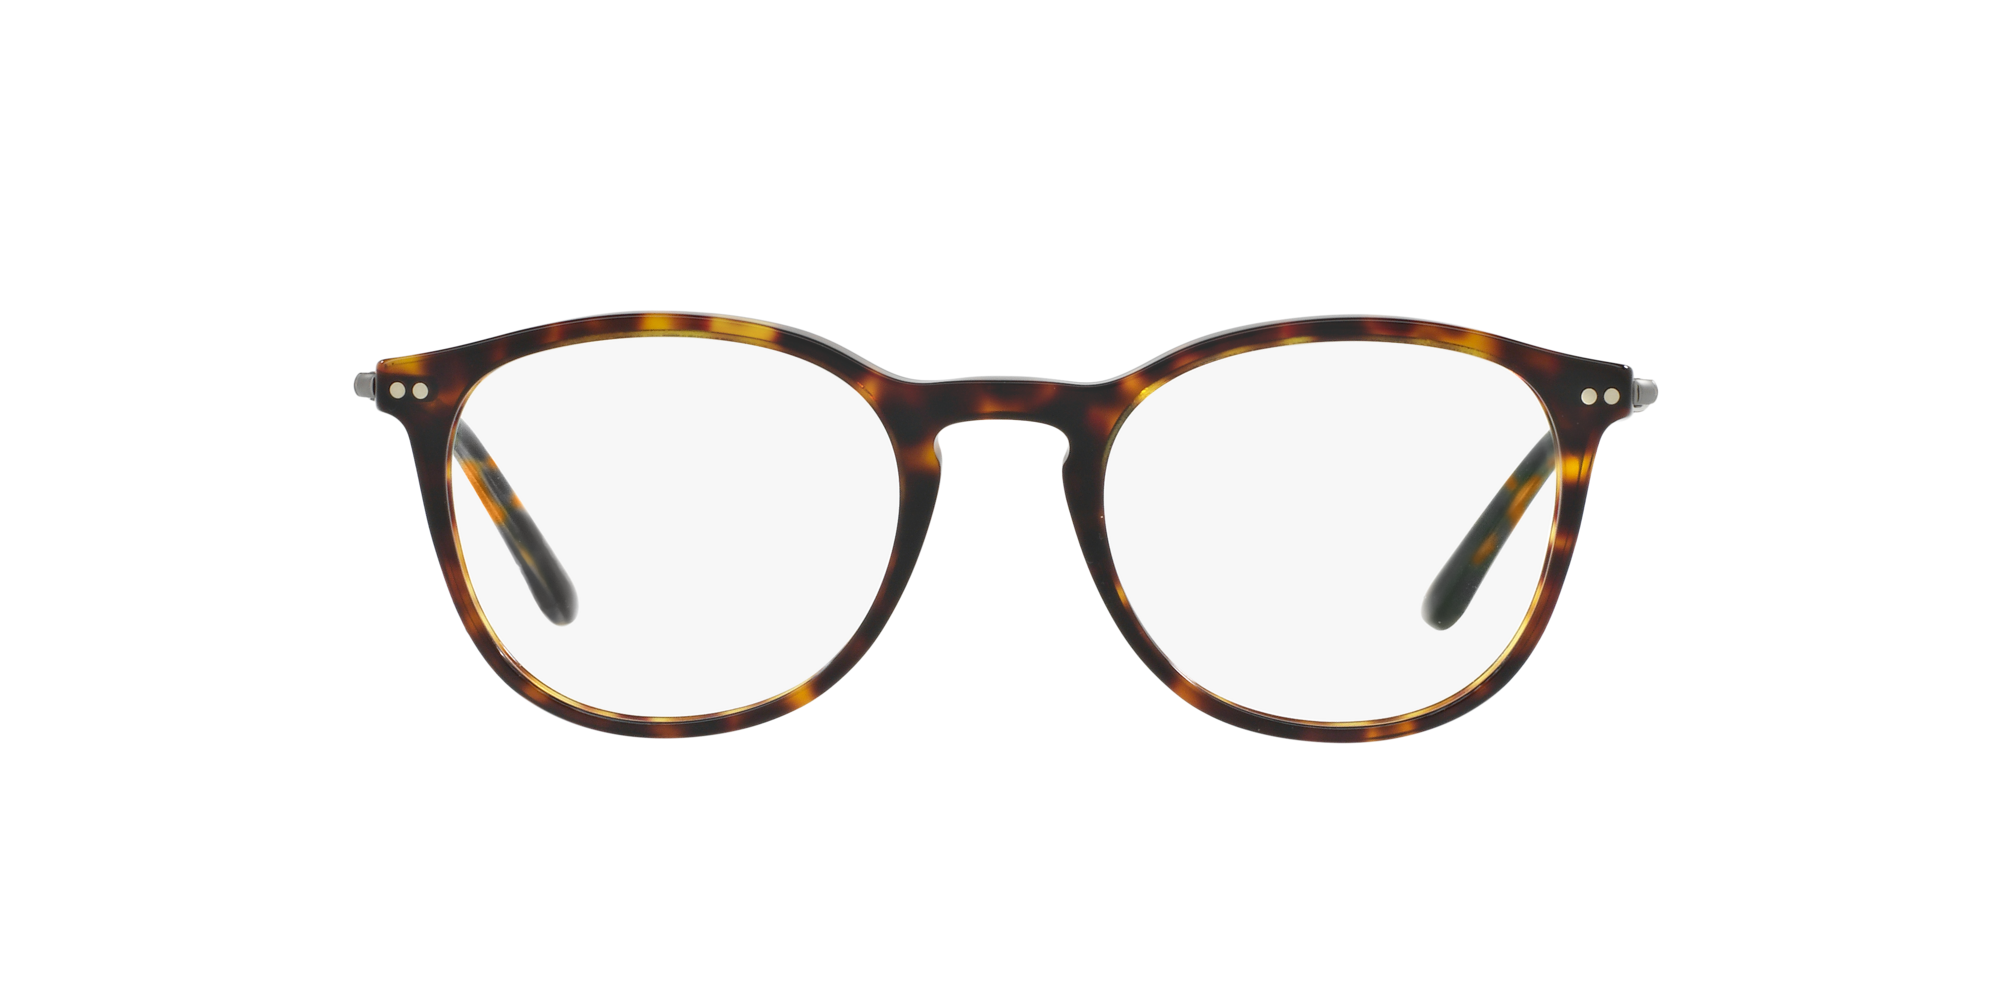 Espejuelos y gafas de sol de lujo  LensCrafters®: gafas oftálmicas  graduadas y lentes de contacto​​​​​​​